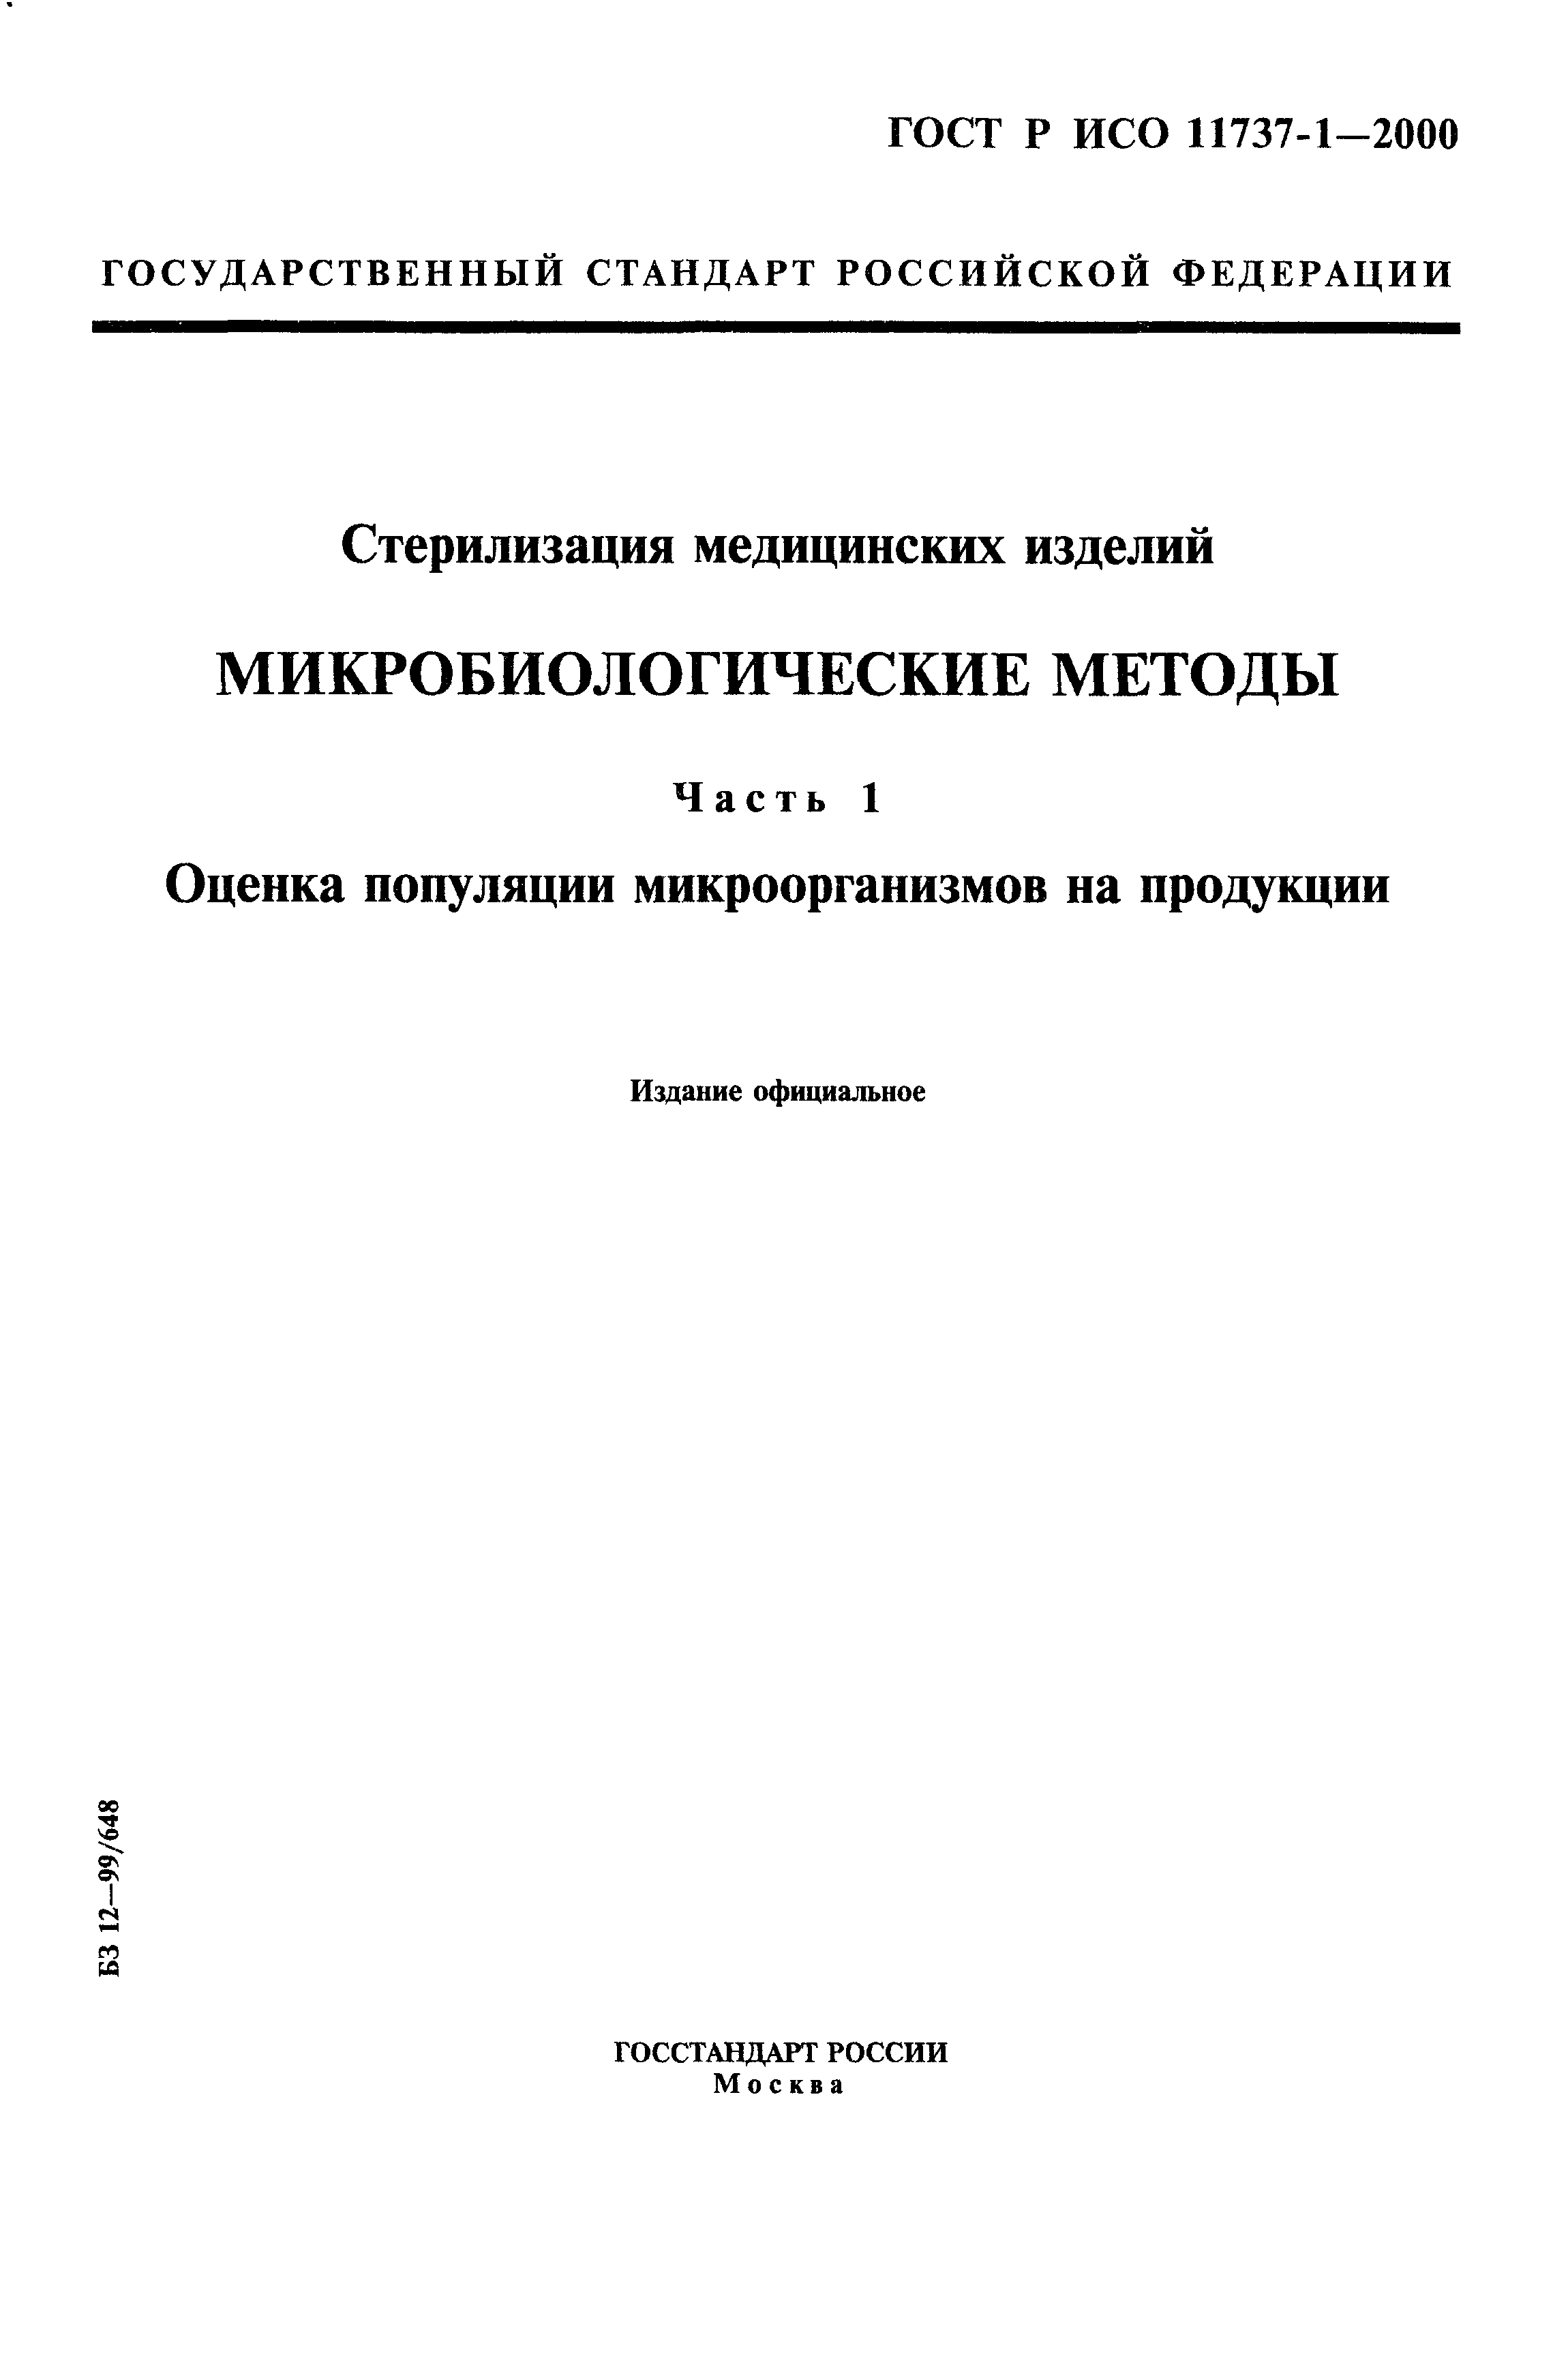 ГОСТ Р ИСО 11737-1-2000